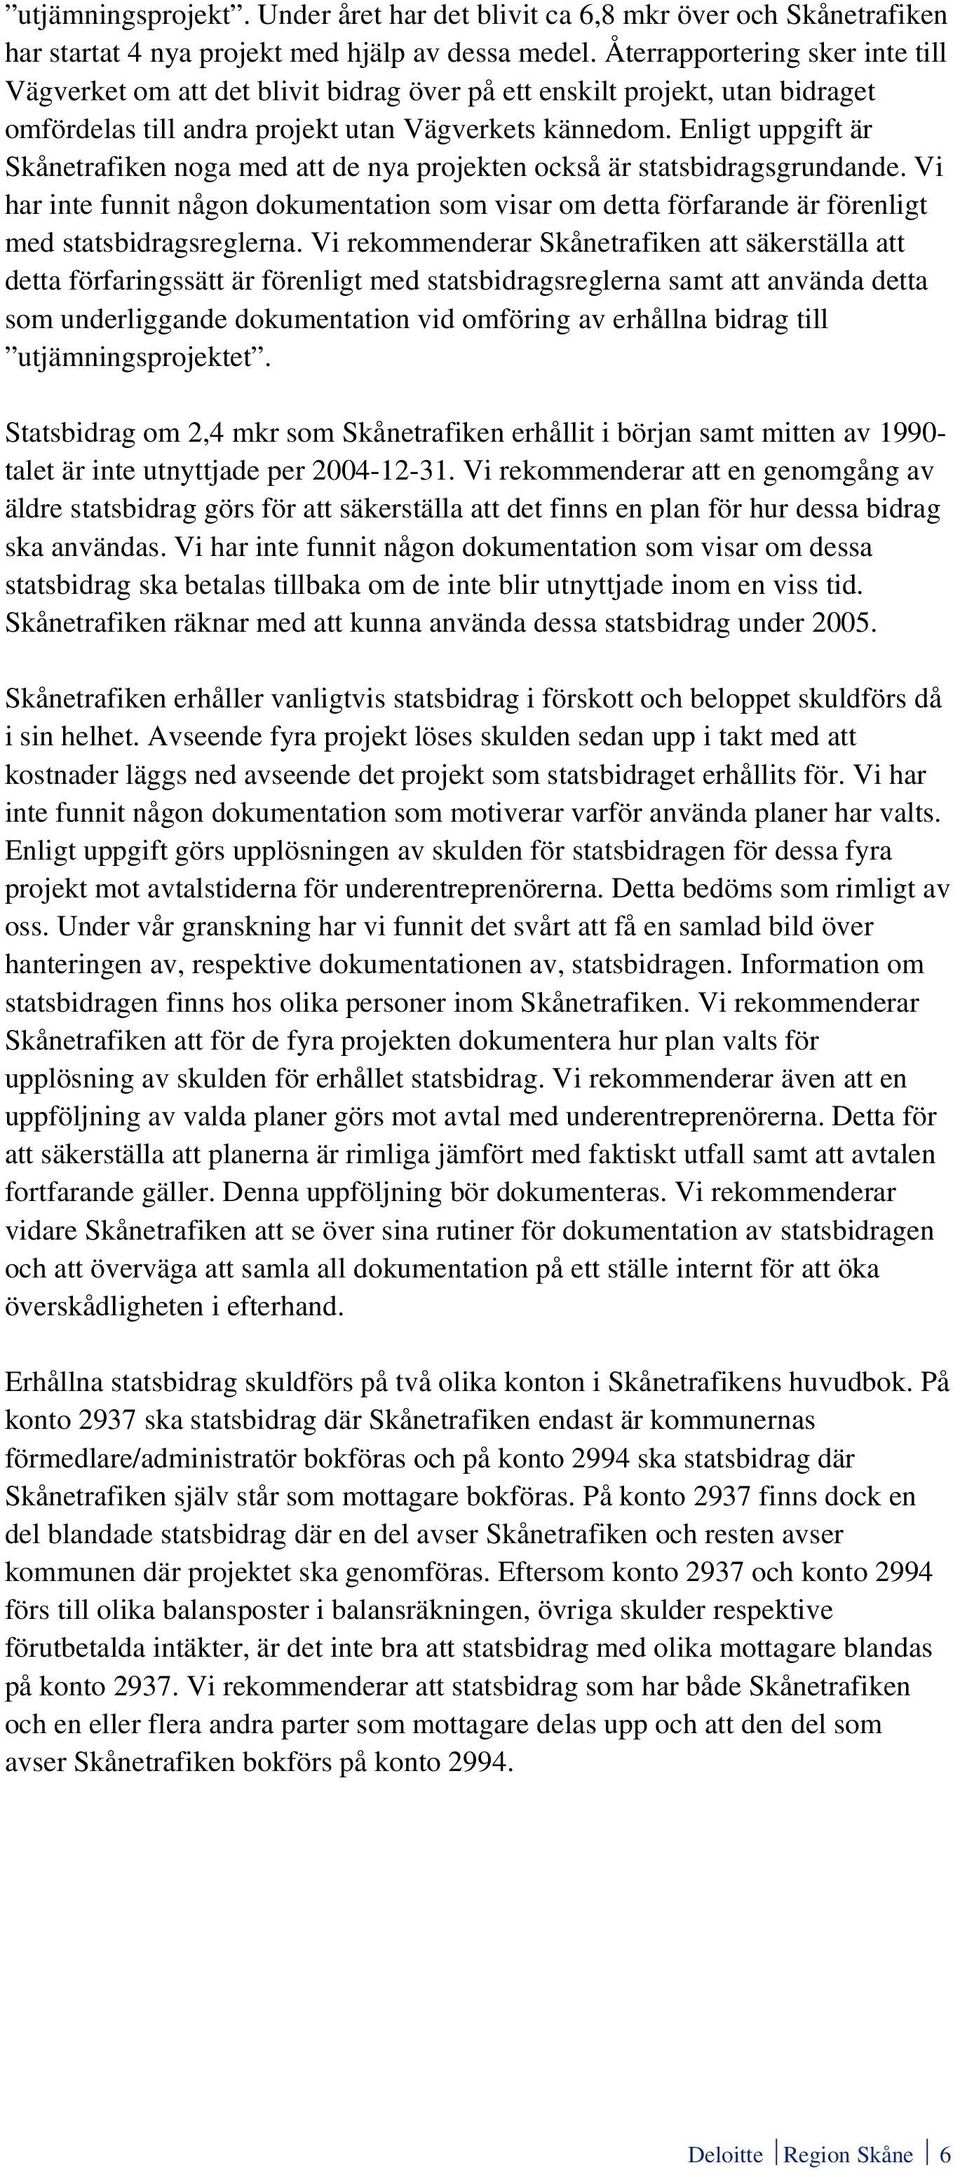 Enligt uppgift är Skånetrafiken noga med att de nya projekten också är statsbidragsgrundande.